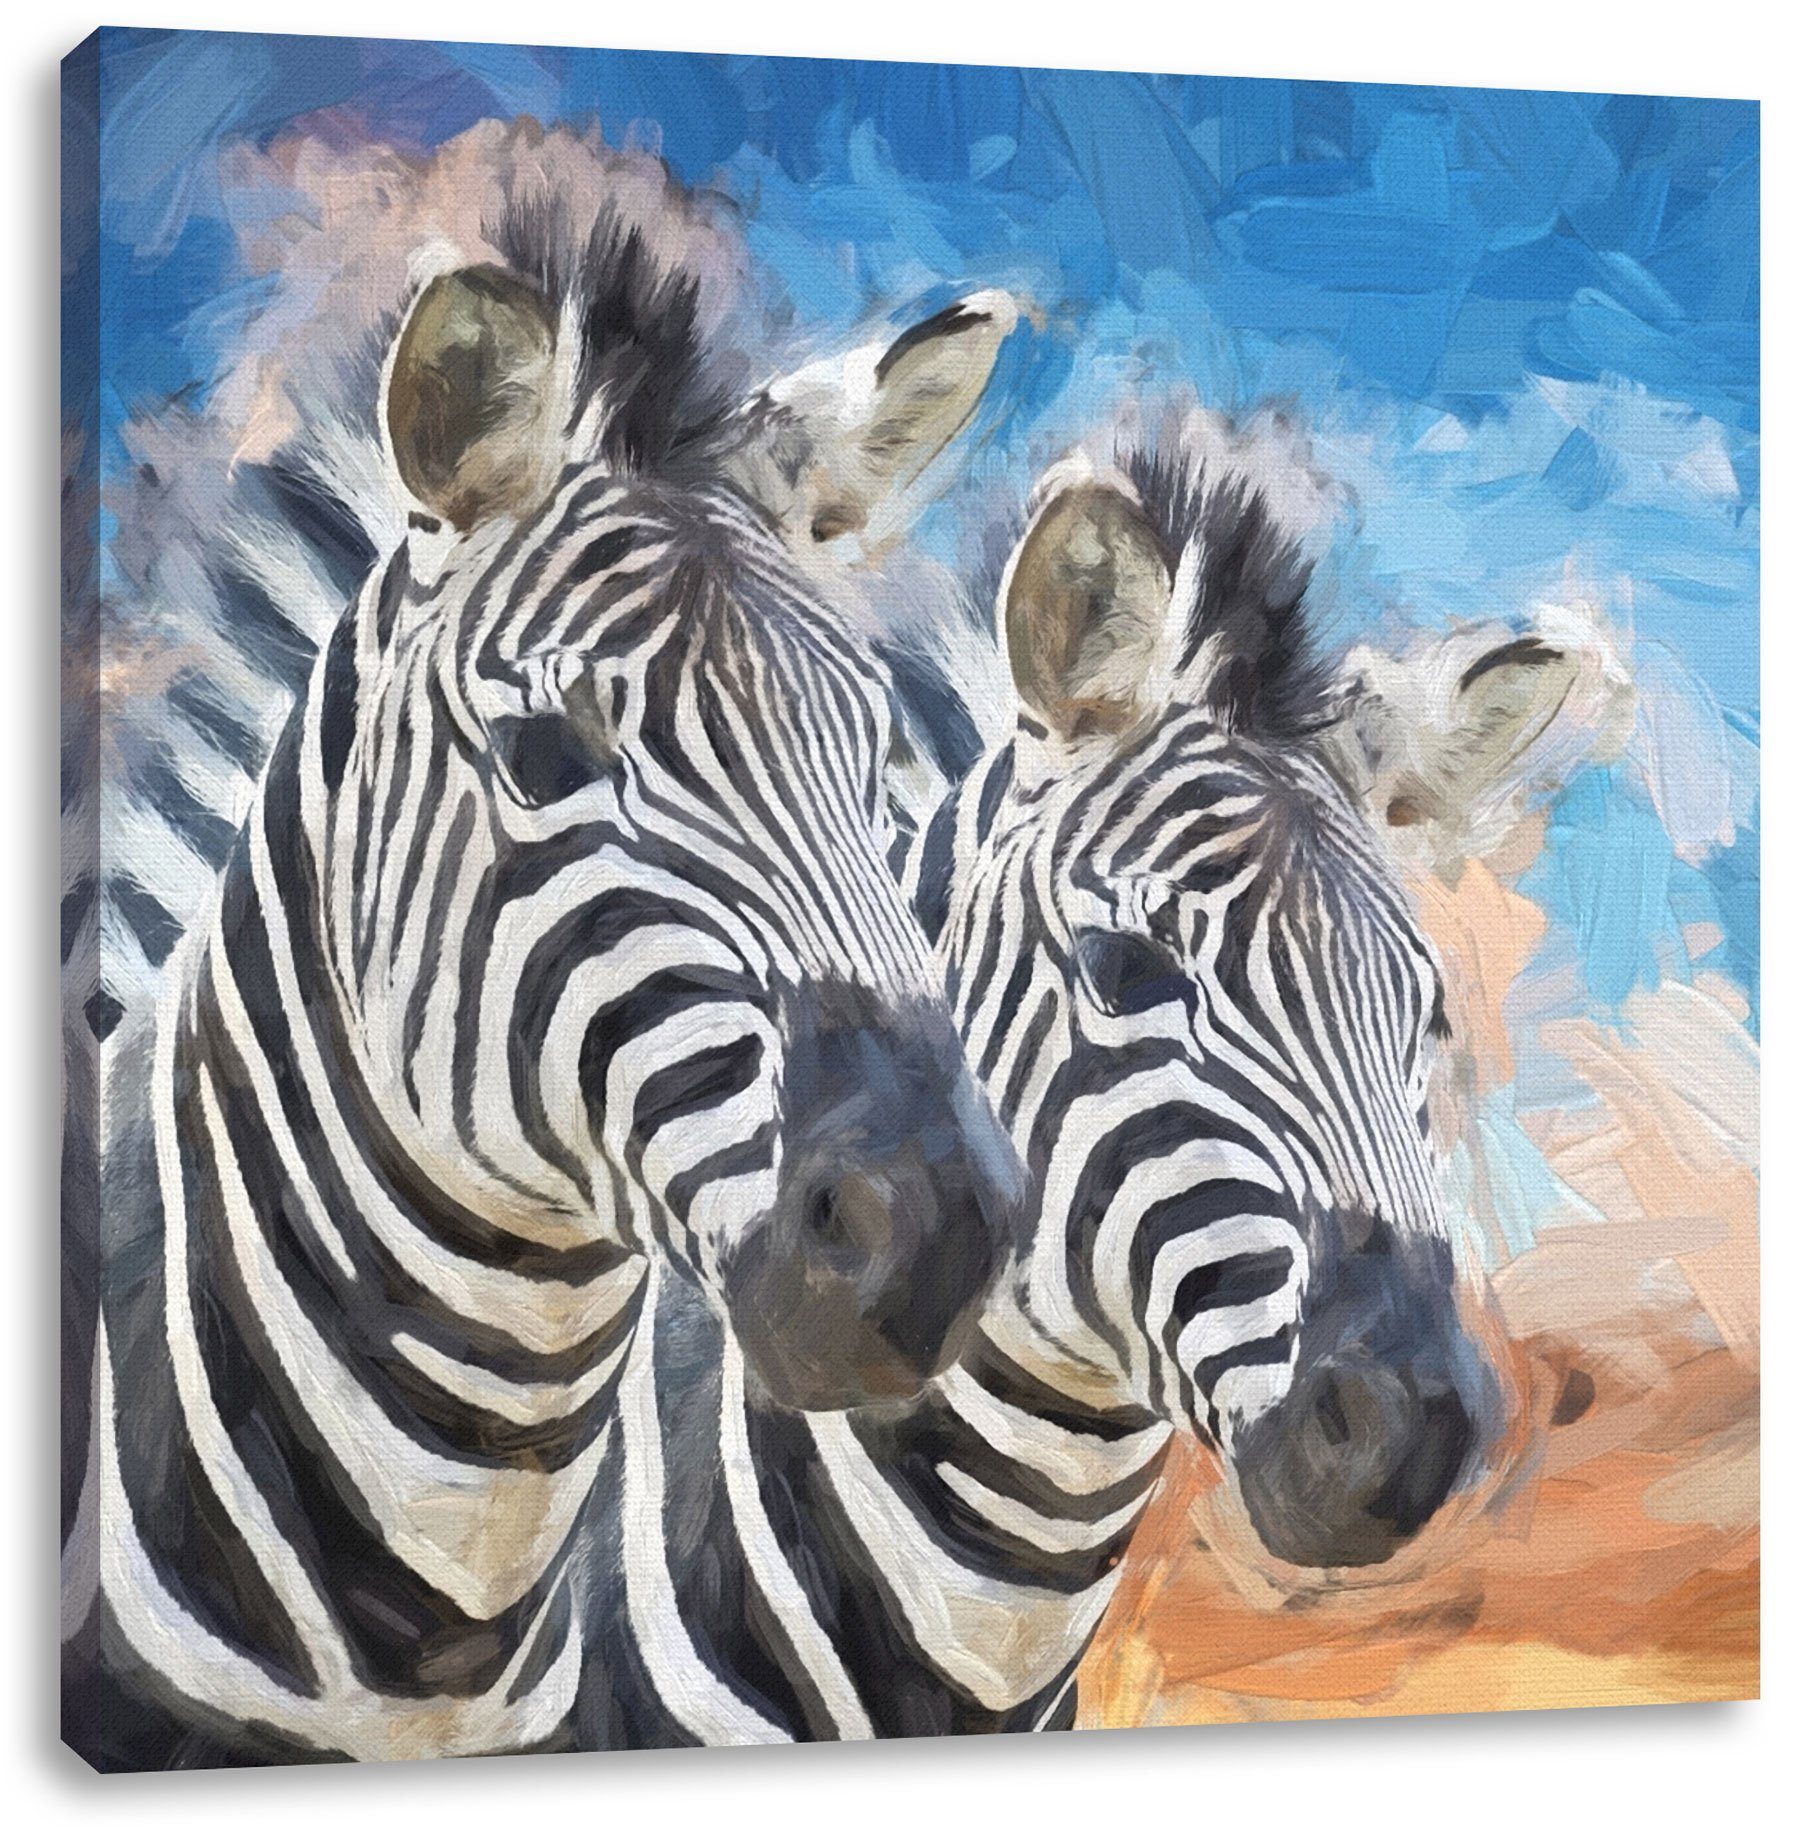 Pixxprint Leinwandbild Leinwandbild St), schönes (1 schönes fertig Zackenaufhänger Zebrapaar bespannt, Zebrapaar, inkl